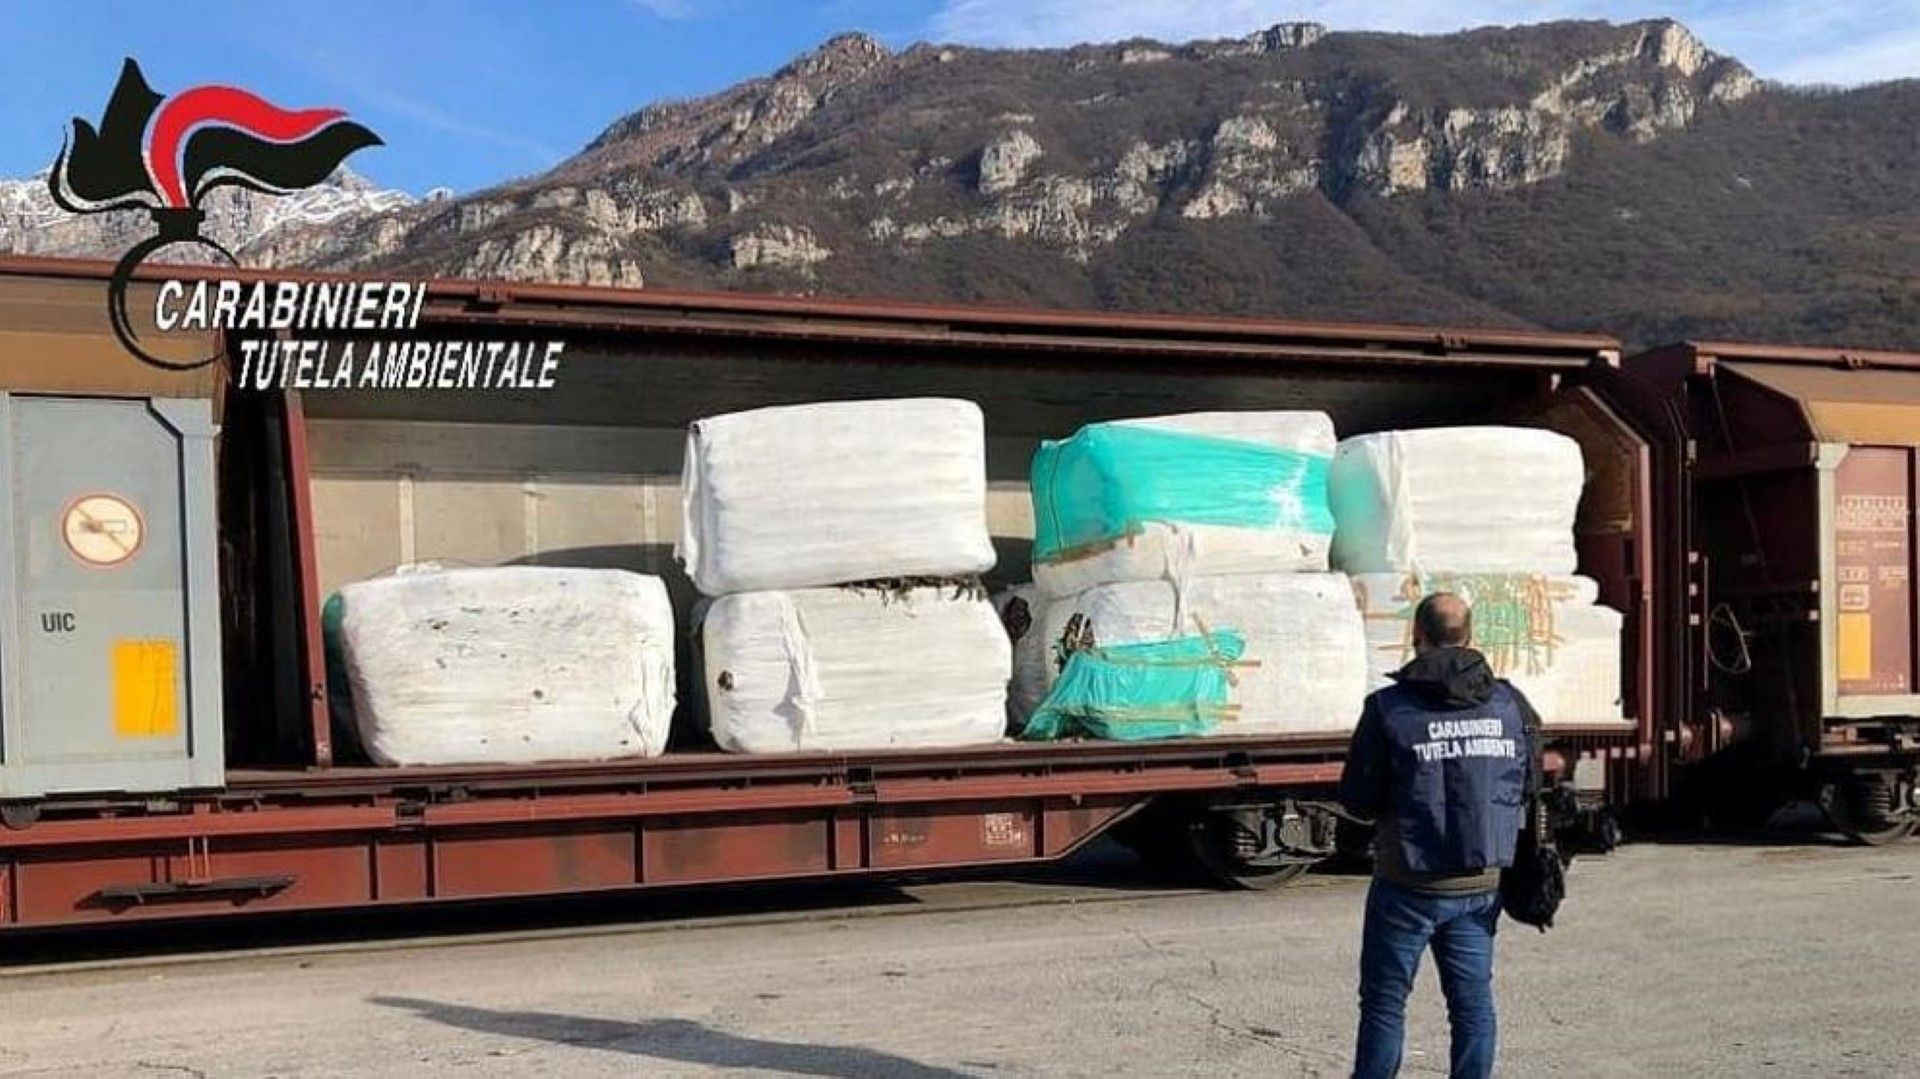 Откритите вагони с отпадъци. Италианските власти водят разследване